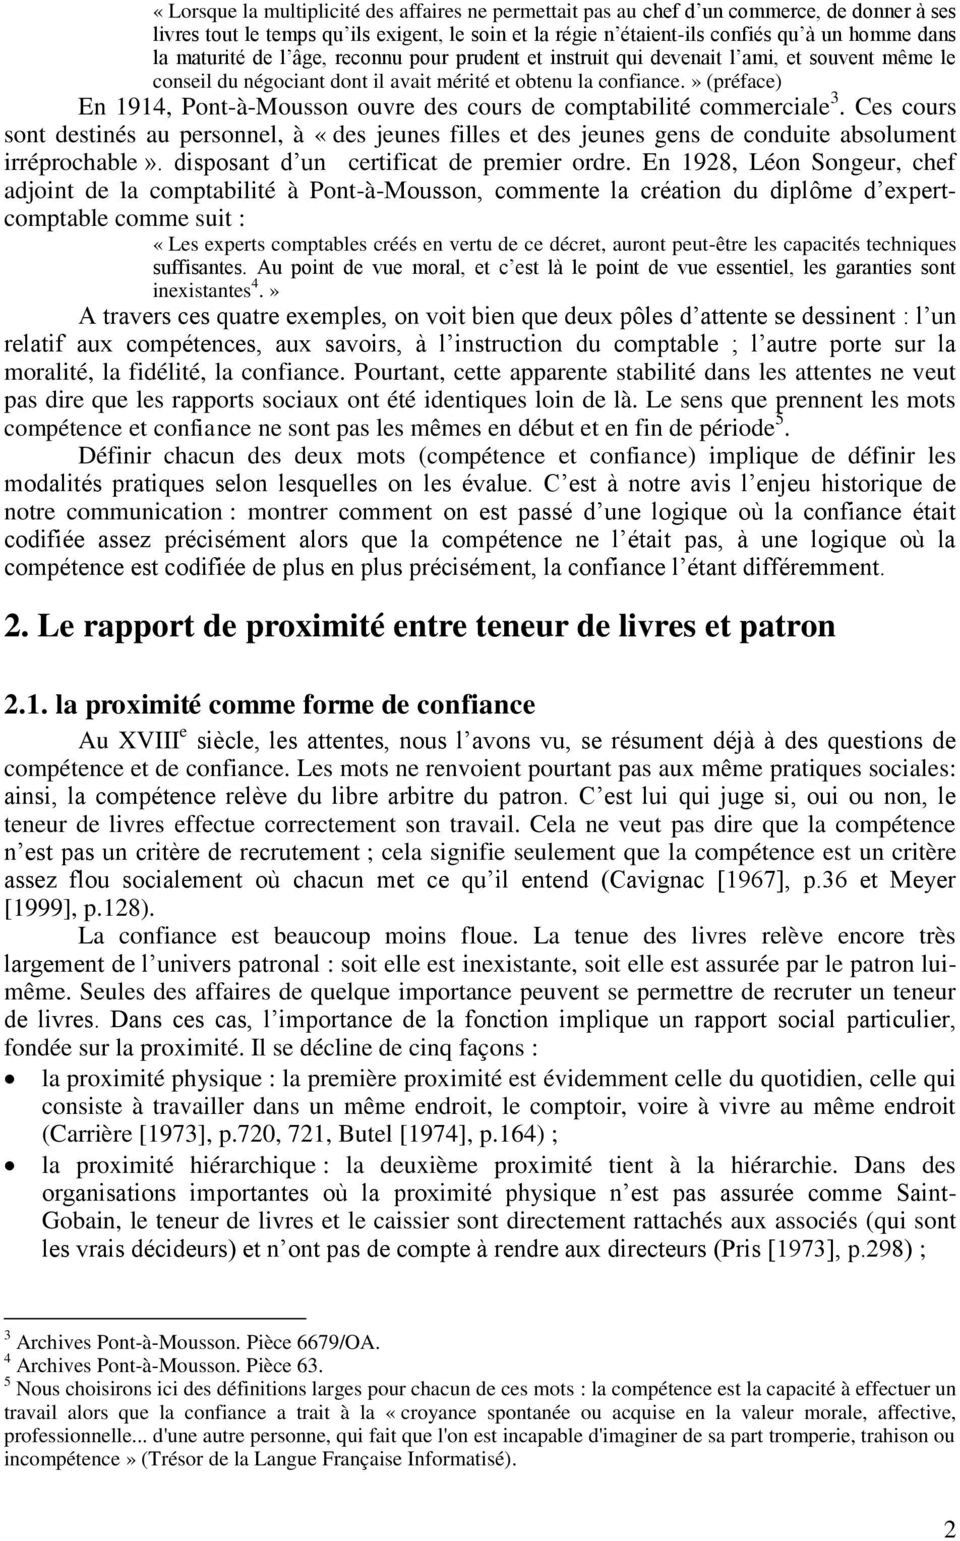 » (préface) En 1914, Pont-à-Mousson ouvre des cours de comptabilité commerciale 3. Ces cours sont destinés au personnel, à «des jeunes filles et des jeunes gens de conduite absolument irréprochable».